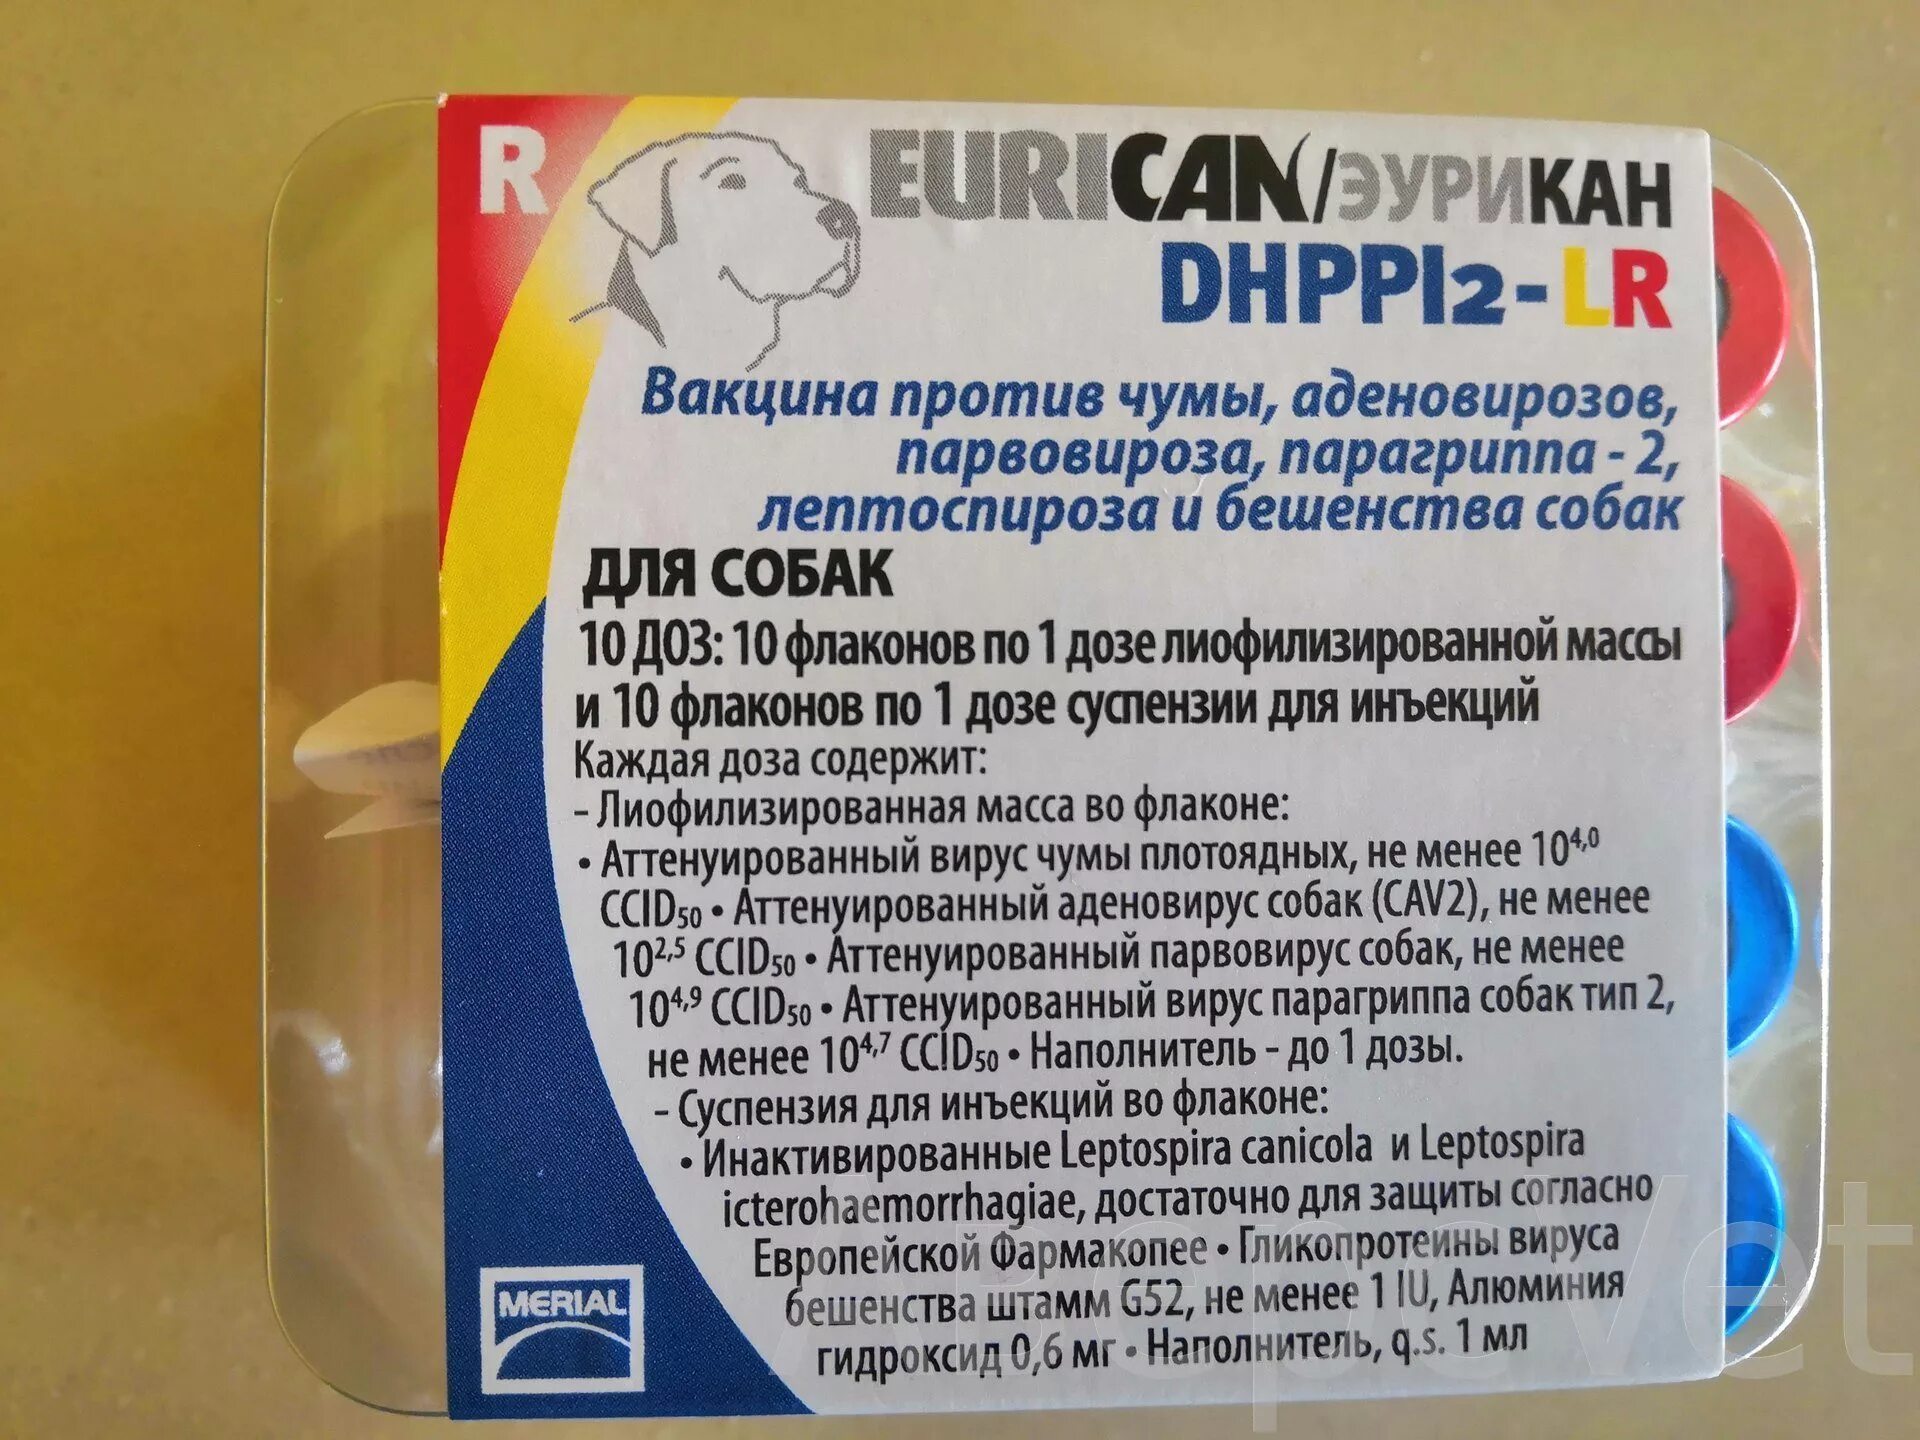 Вакцина эурикан спб. Eurican dhppi2. Вакцина вангард7. Эурикан dhppi2 вакцина для собак. Вакцина Эурикан dhppi2.